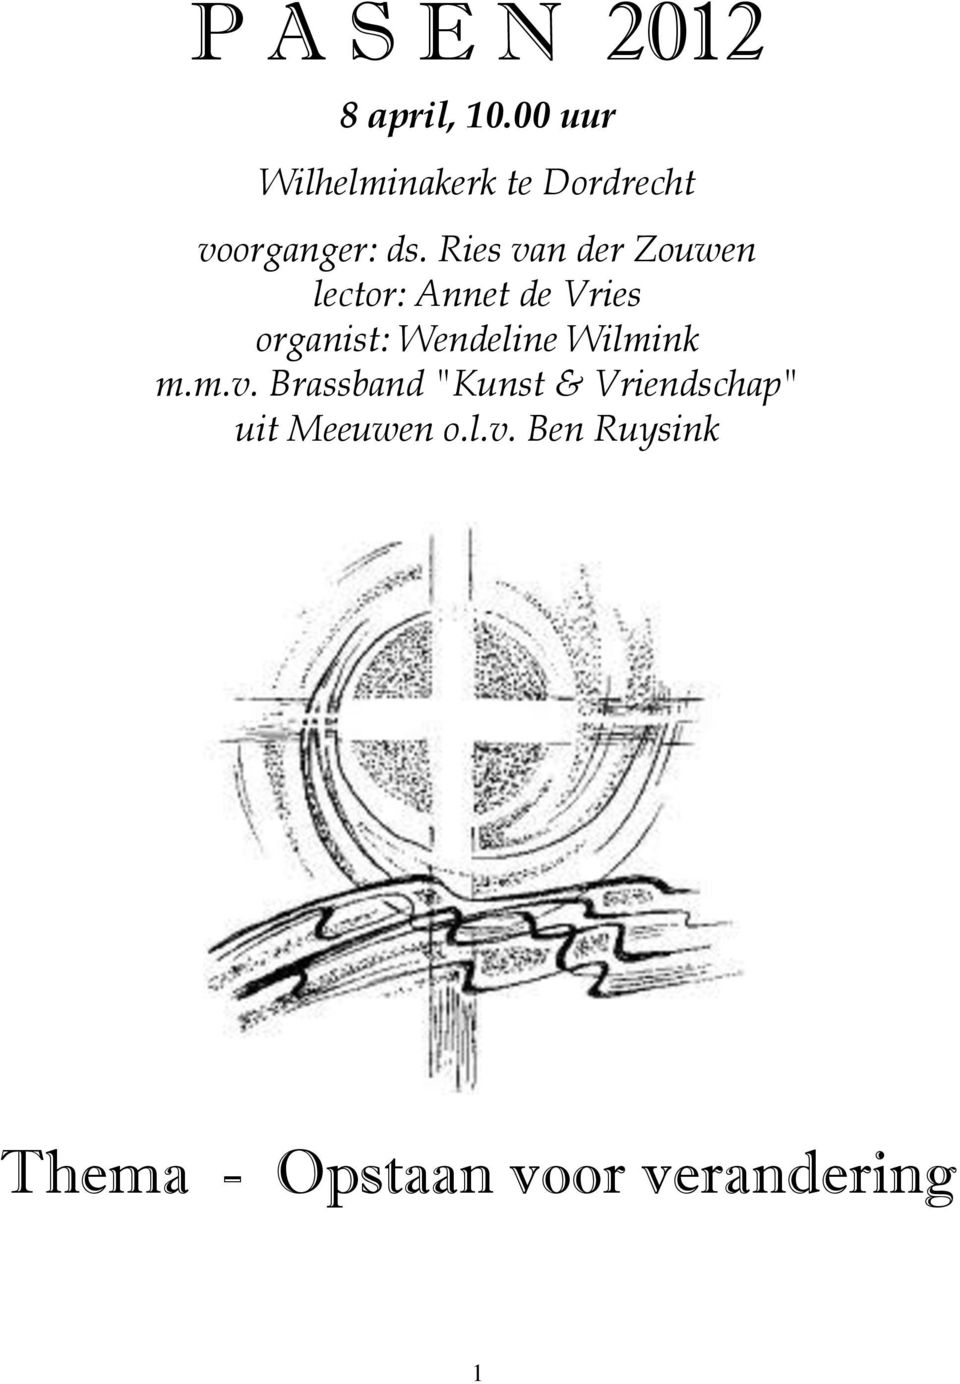 Ries van der Zouwen lector: Annet de Vries organist: Wendeline